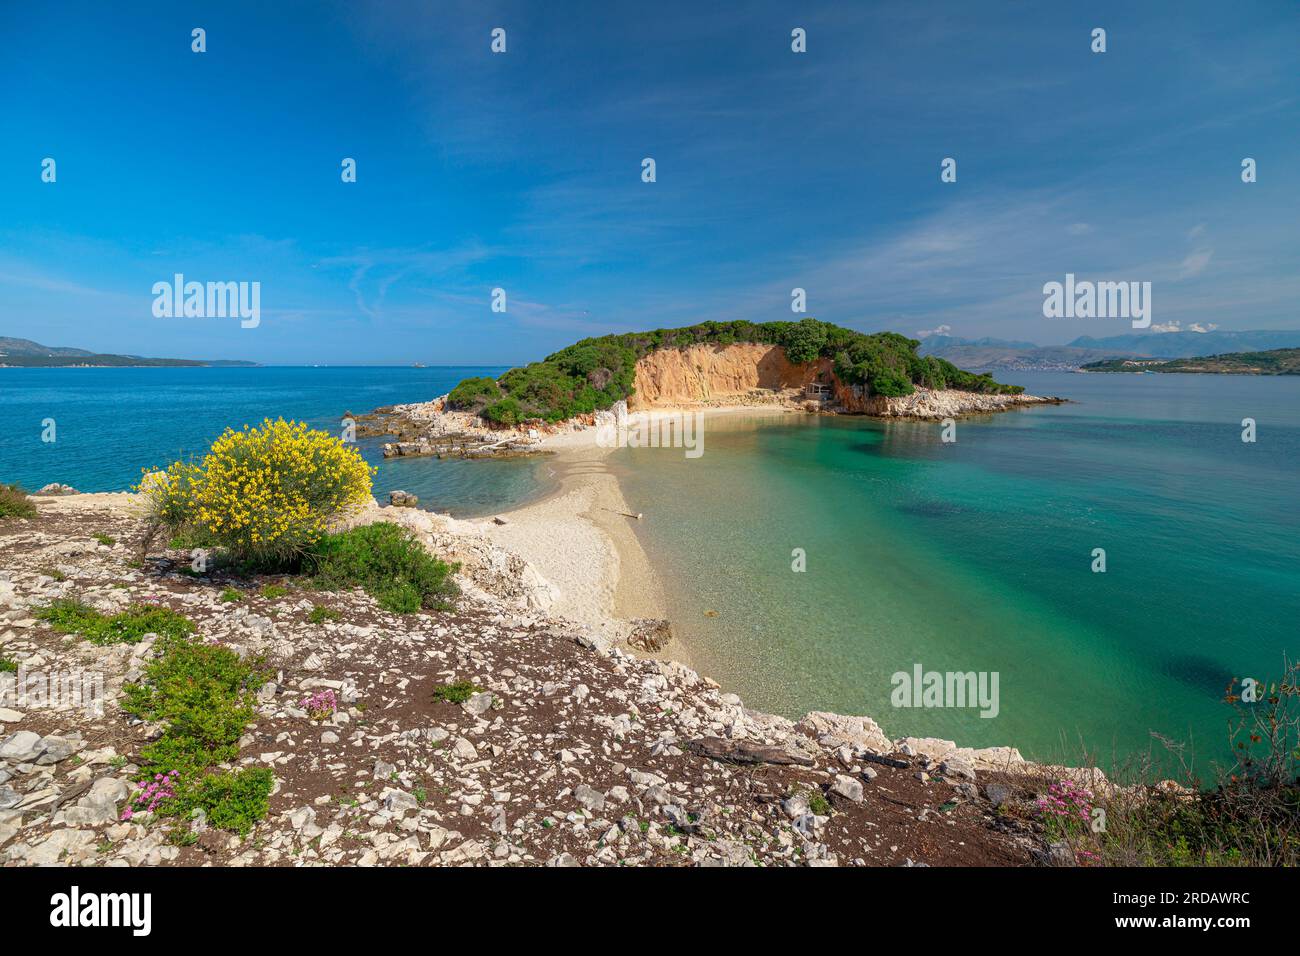 Le isole gemelle dell'arcipelago di Ksamil sono un paio di incantevoli isole situate al largo della costa meridionale dell'Albania, vicino alla popolare città turistica Foto Stock